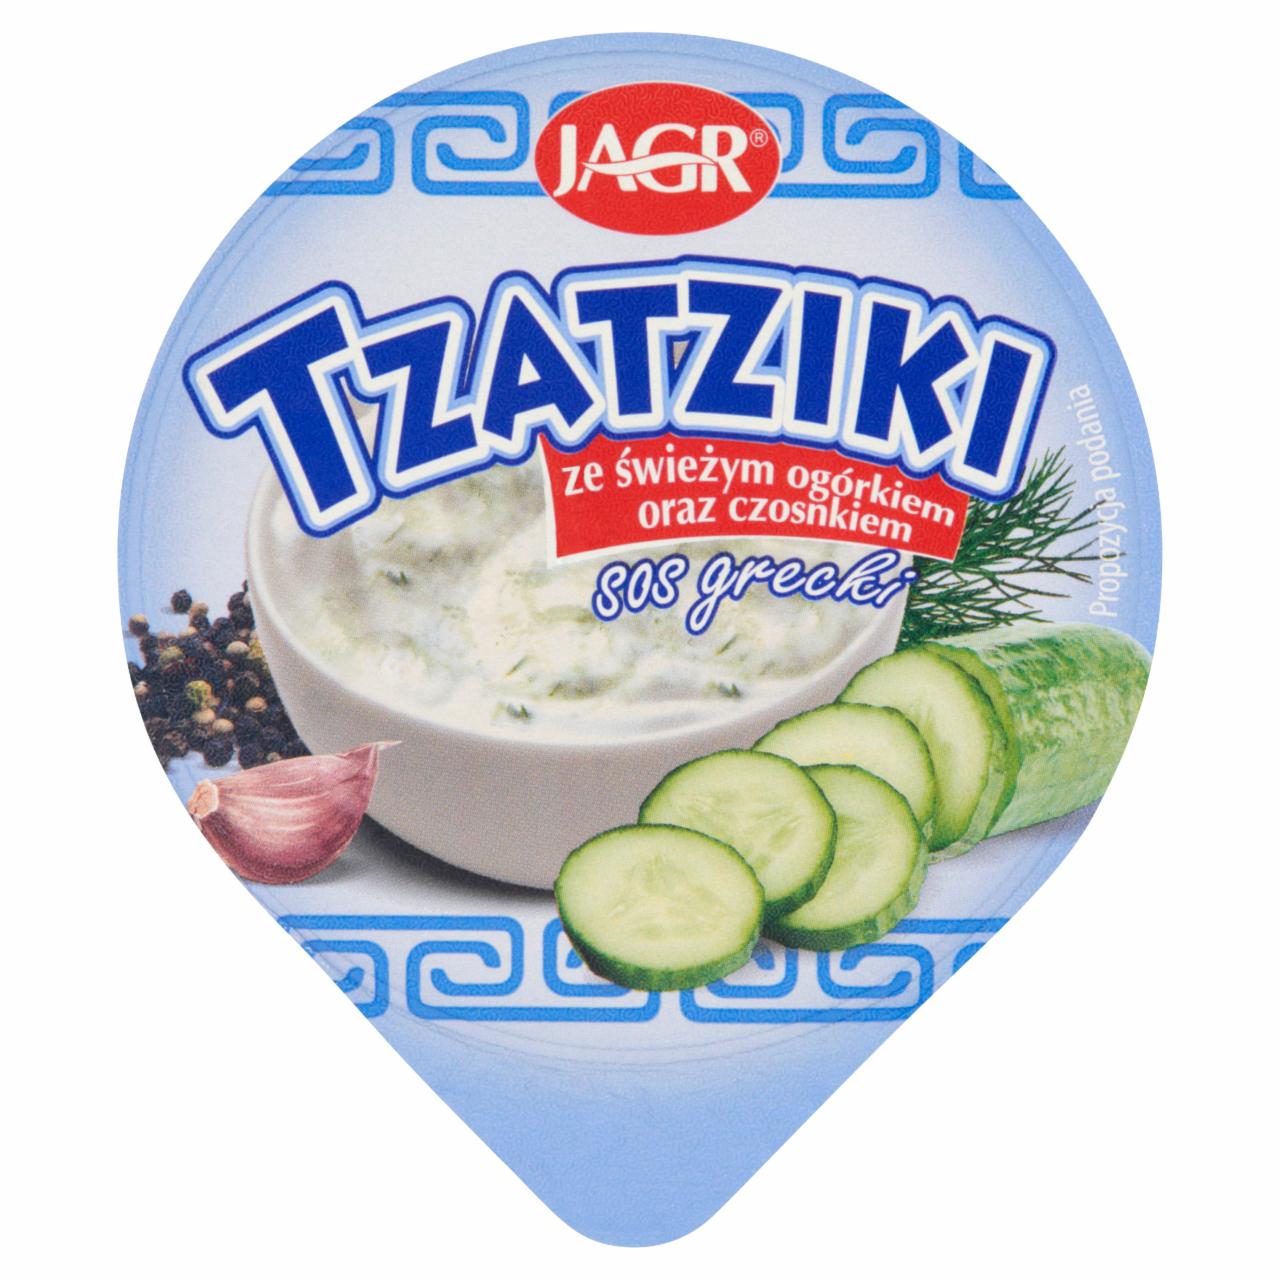 Fotografie - Tzatziki sos grecki ze świeżym ogórkiem i czosnkiem Jagr